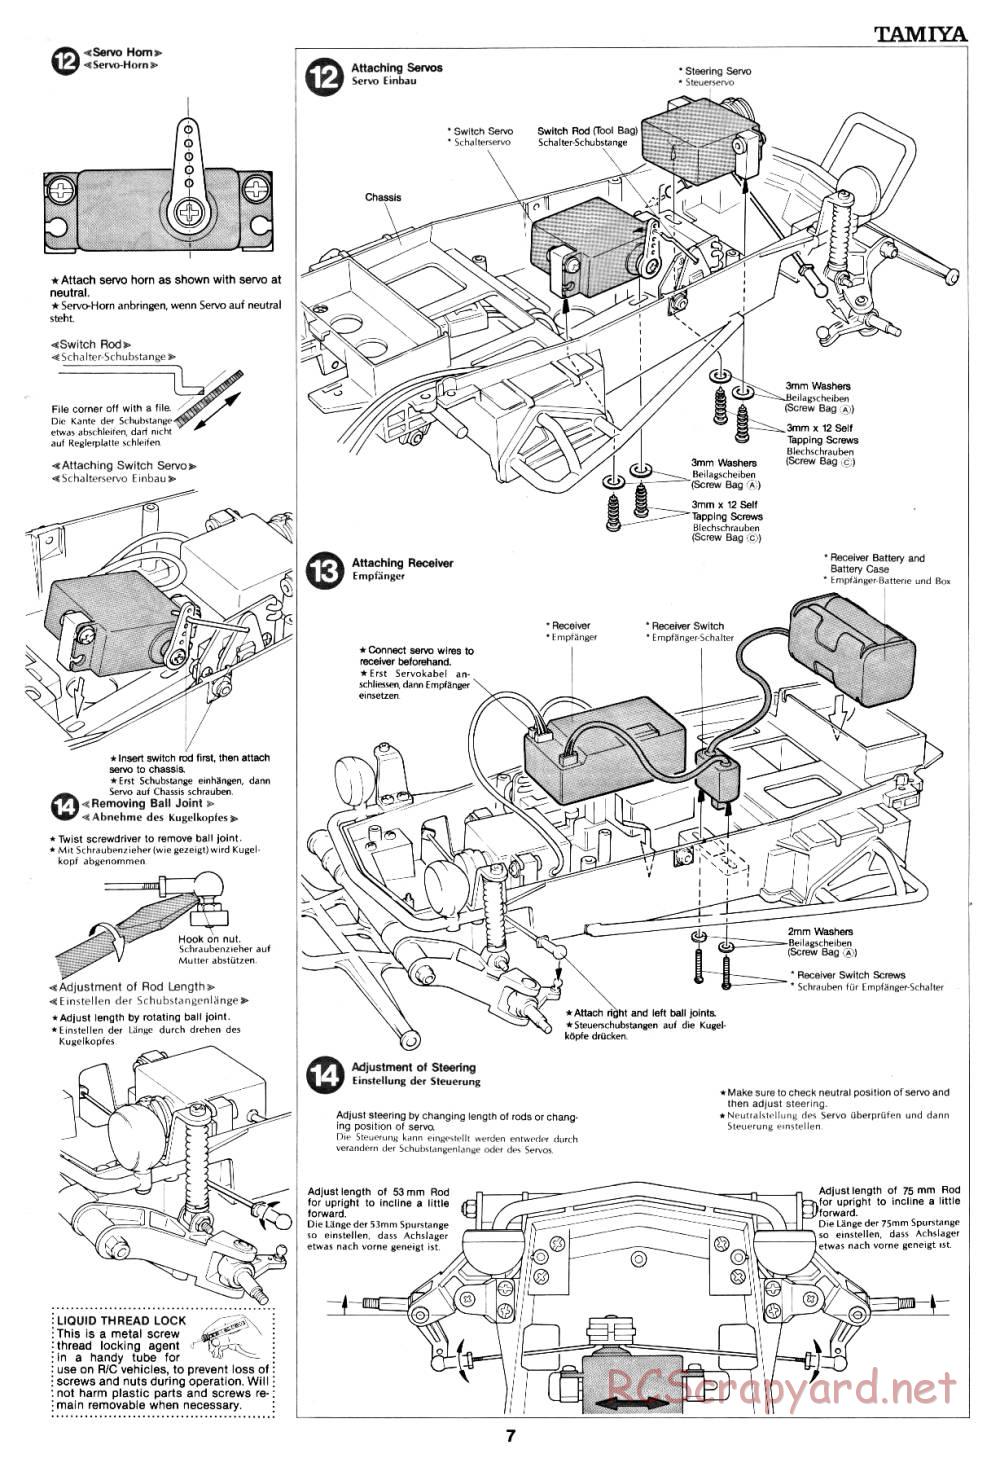 Tamiya - Fast Attack Vehicle - 58046 - Manual - Page 7